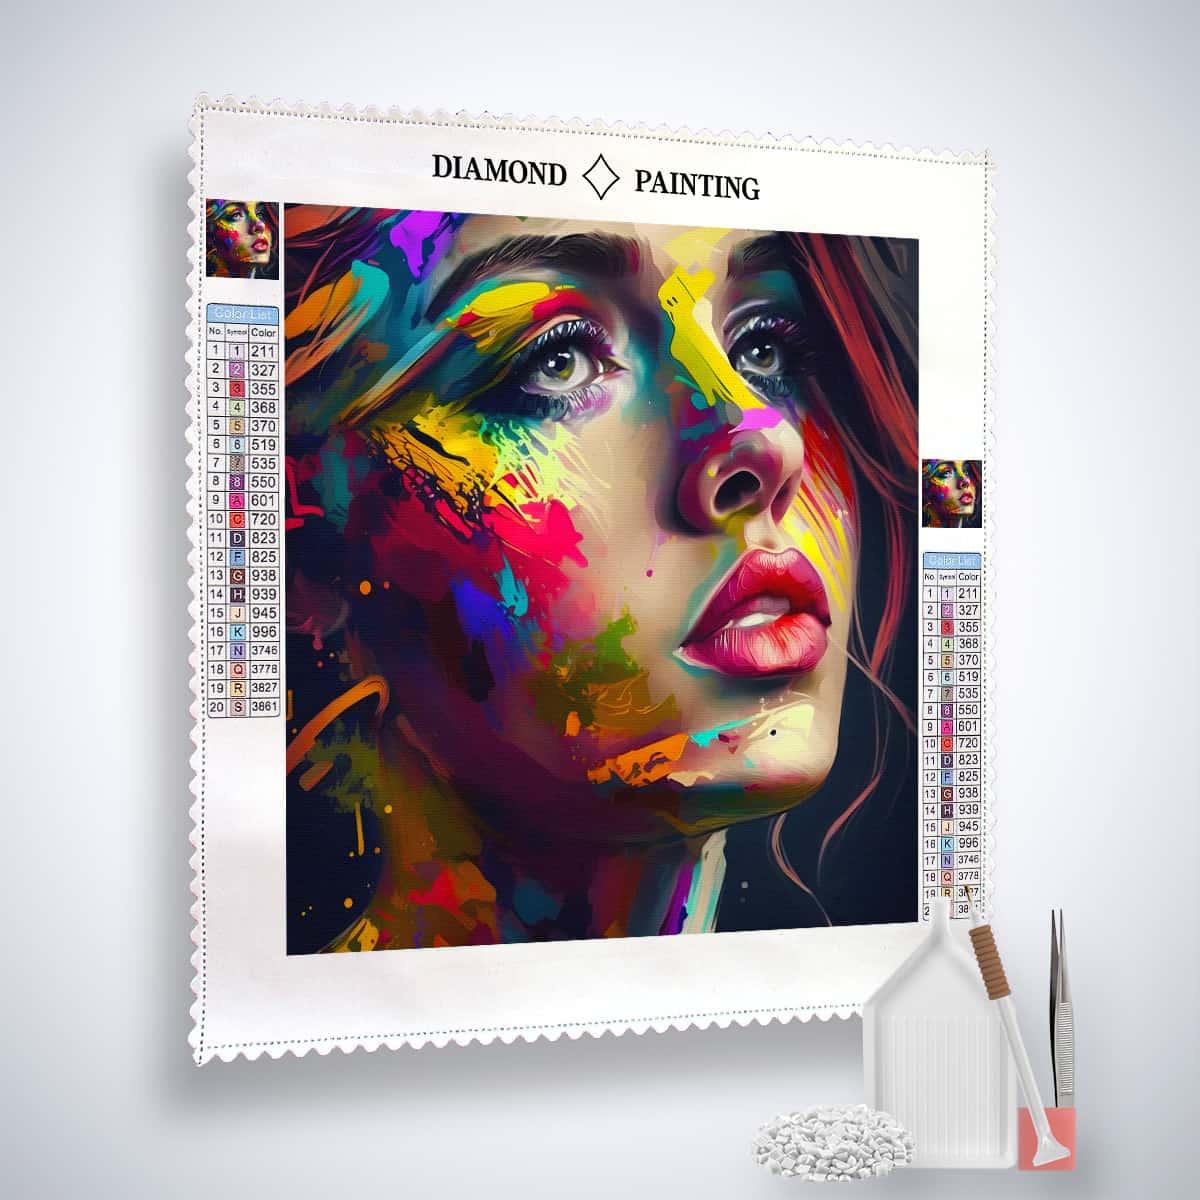 AB Diamond Painting - Frau mit Farben - gedruckt in Ultra-HD - AB Diamond, Menschen, Neu eingetroffen, Quadratisch